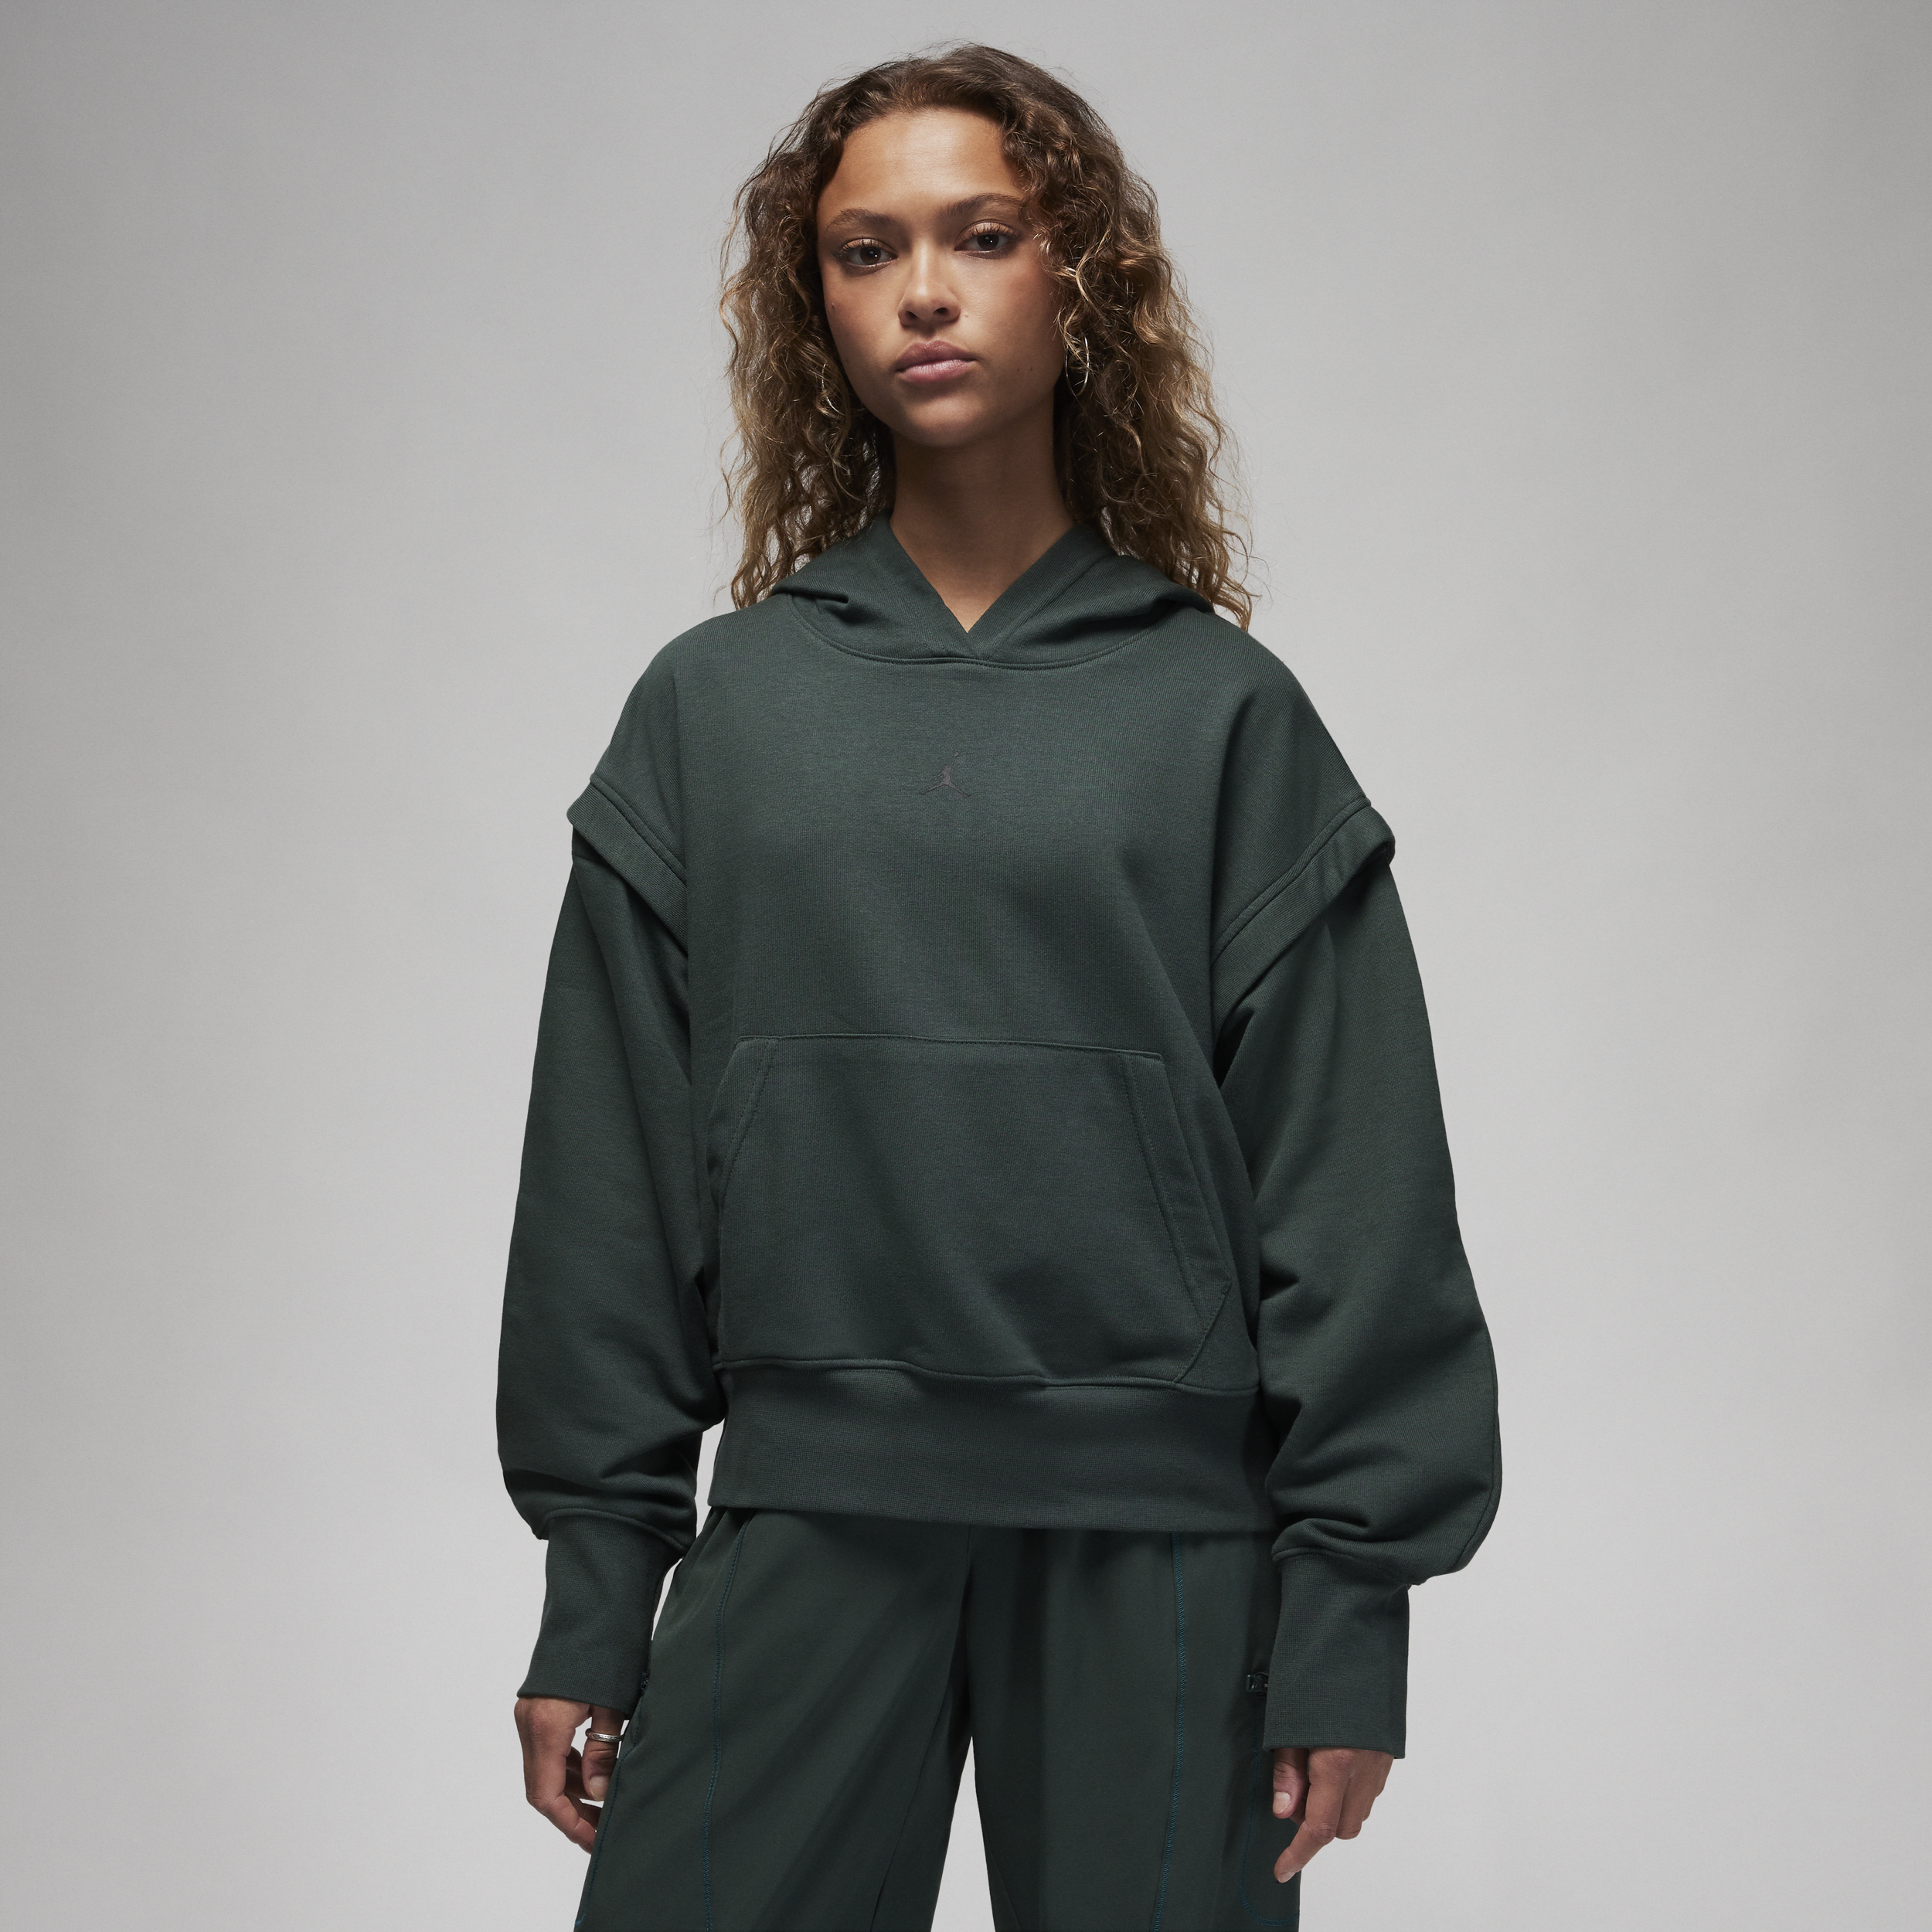 Jordan Sport-hættetrøje i fleece til kvinder - grøn